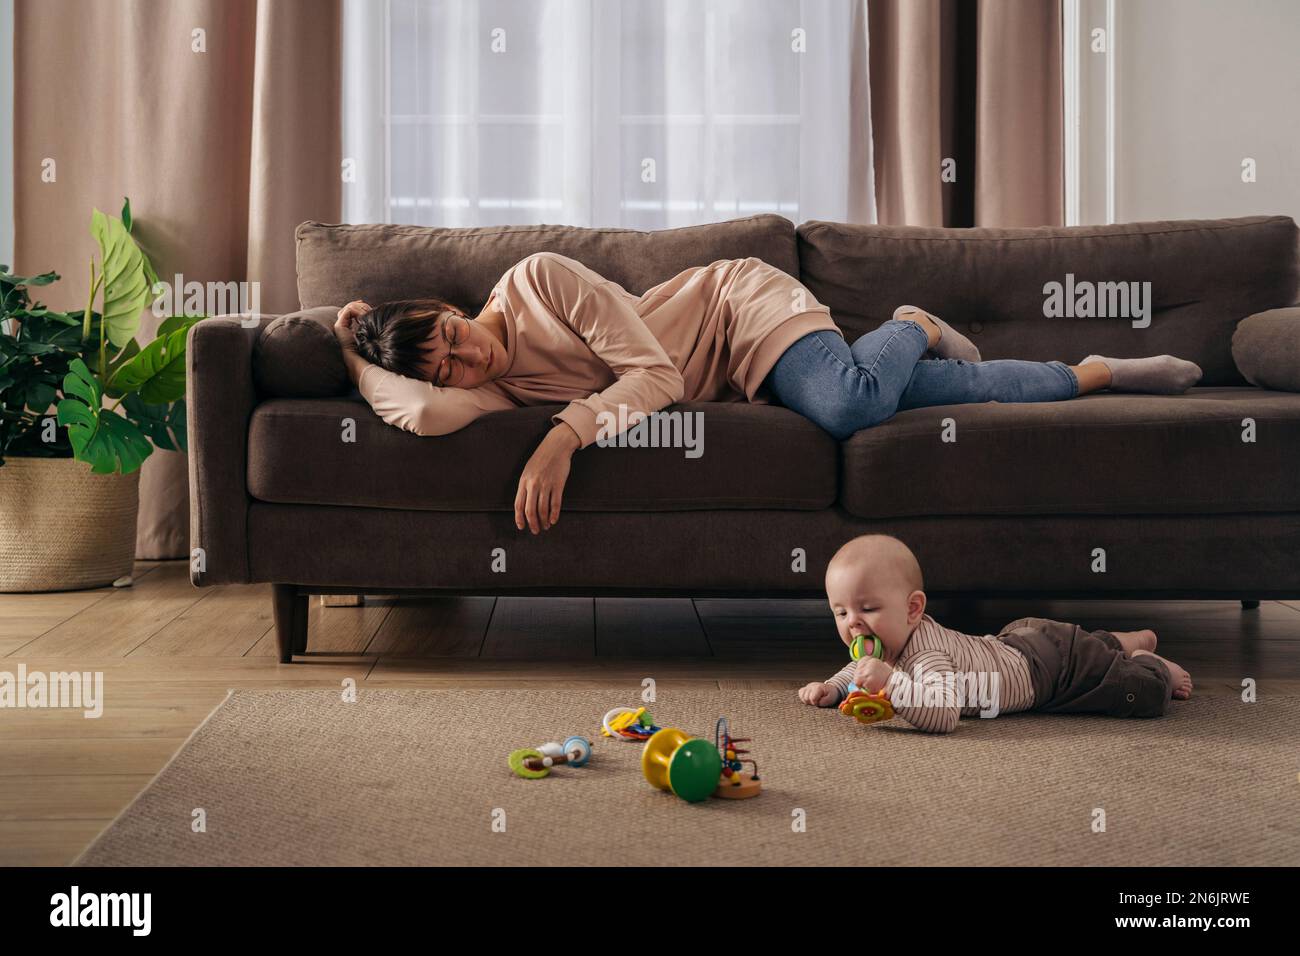 Junge, müde Mutter, die unter Schlafmangel leidet, schläft auf dem Sofa, während ihr kleines Baby auf dem Boden spielt. erschöpfte mutter mit postnataler Depression, will nicht mit ihrem Sohn spielen Stockfoto